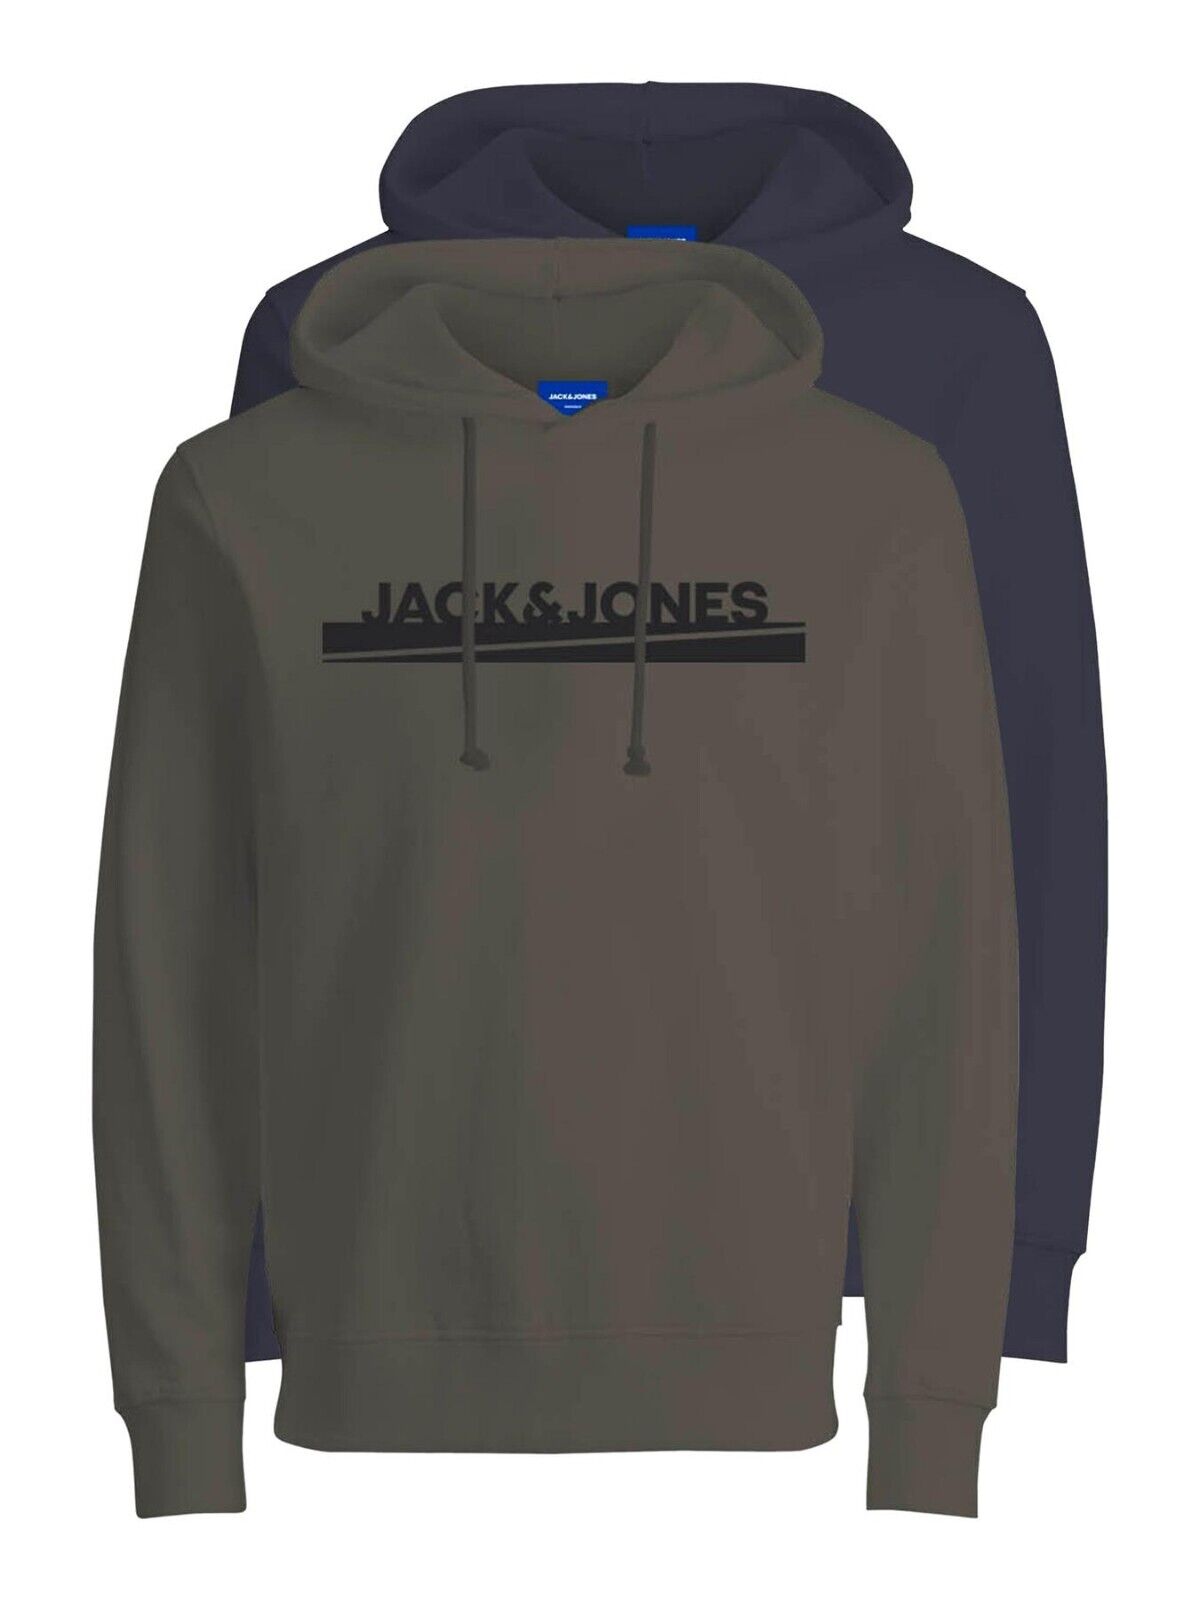 Mens 2 Pack Hoodies Jack & Jones Pullover Long Sleeve Top Warm Sweatshirt S-2XL